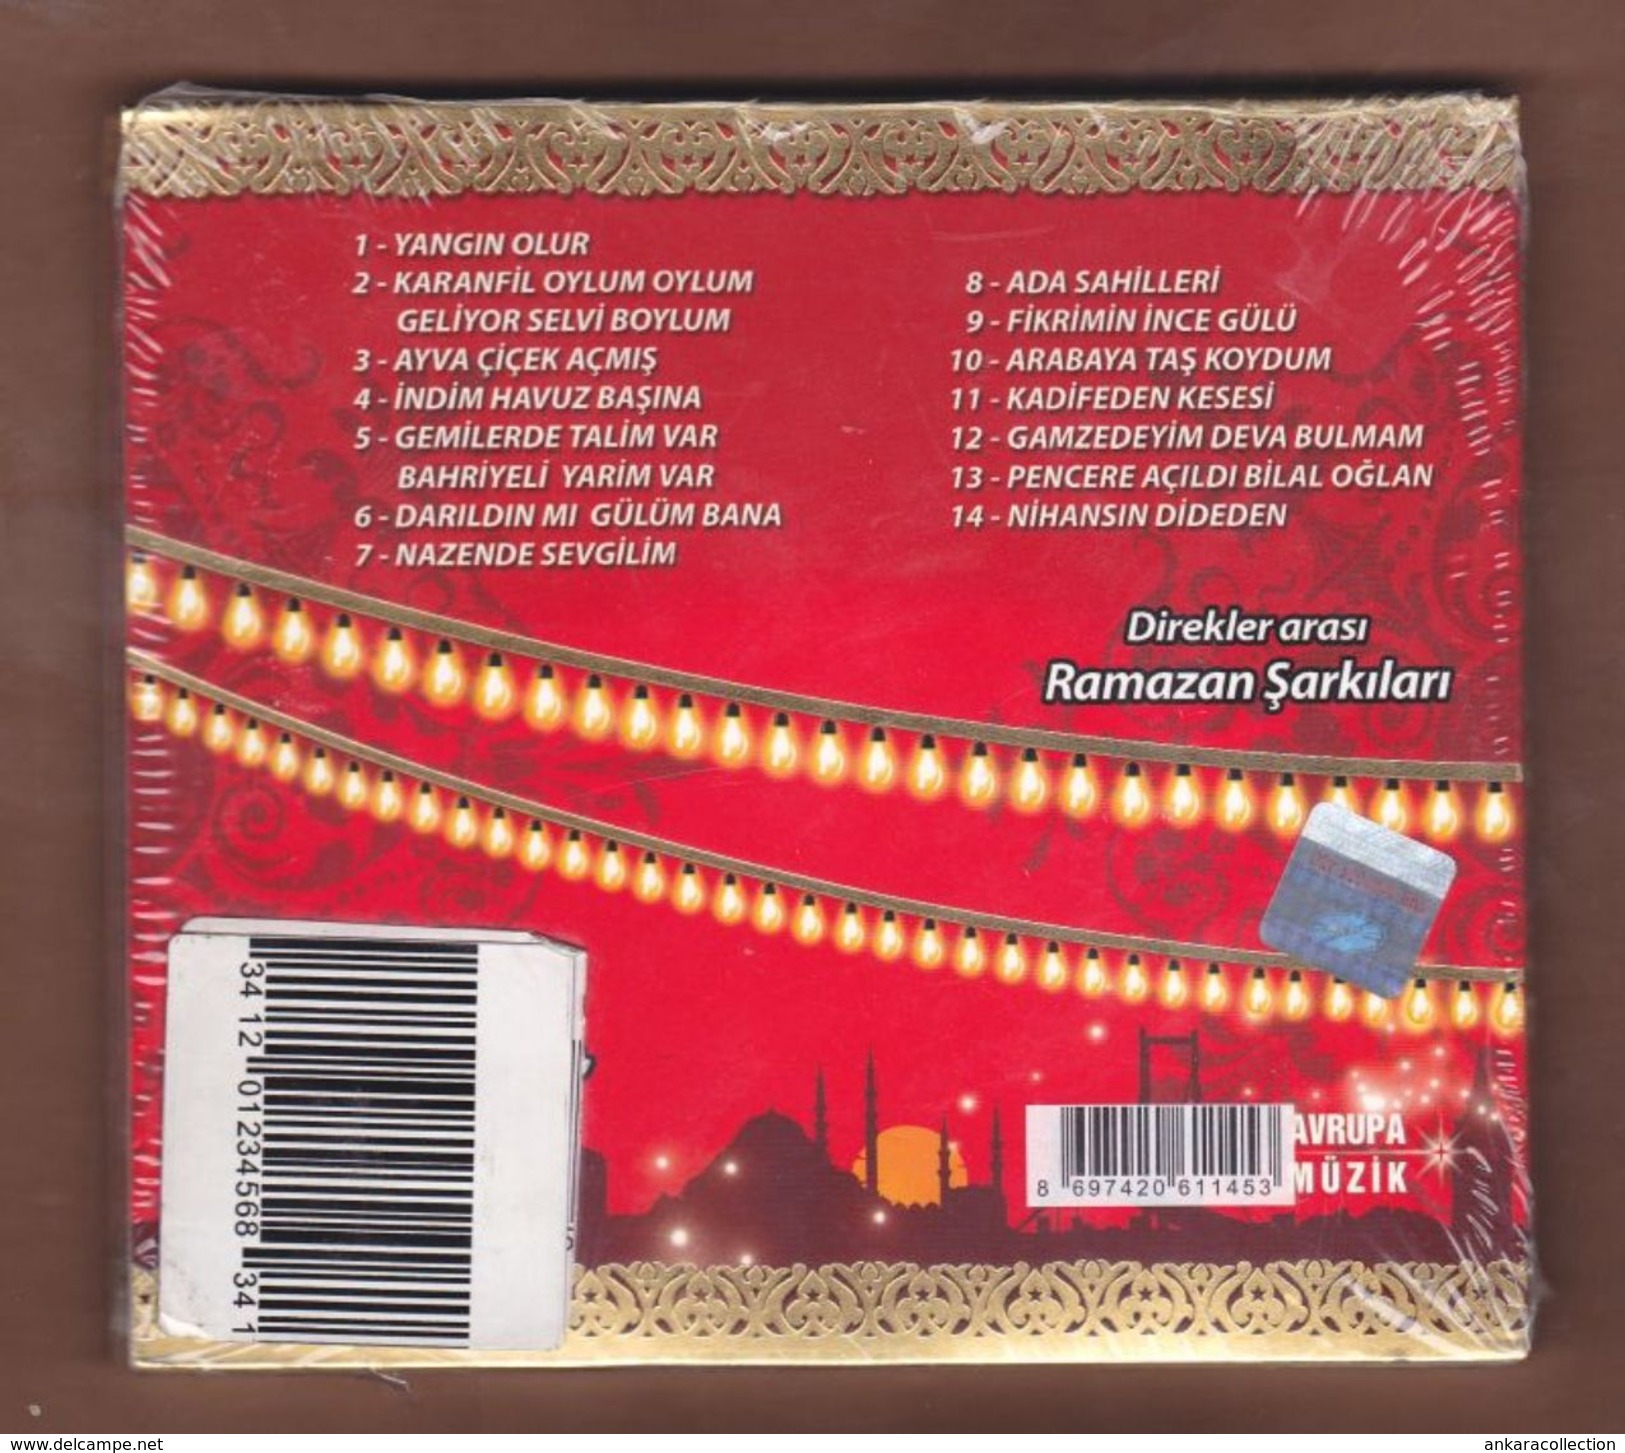 AC - Cola Turka Ala Turka Direkler Arası Ramazan şarkıları BRAND NEW TURKISH MUSIC CD - Wereldmuziek